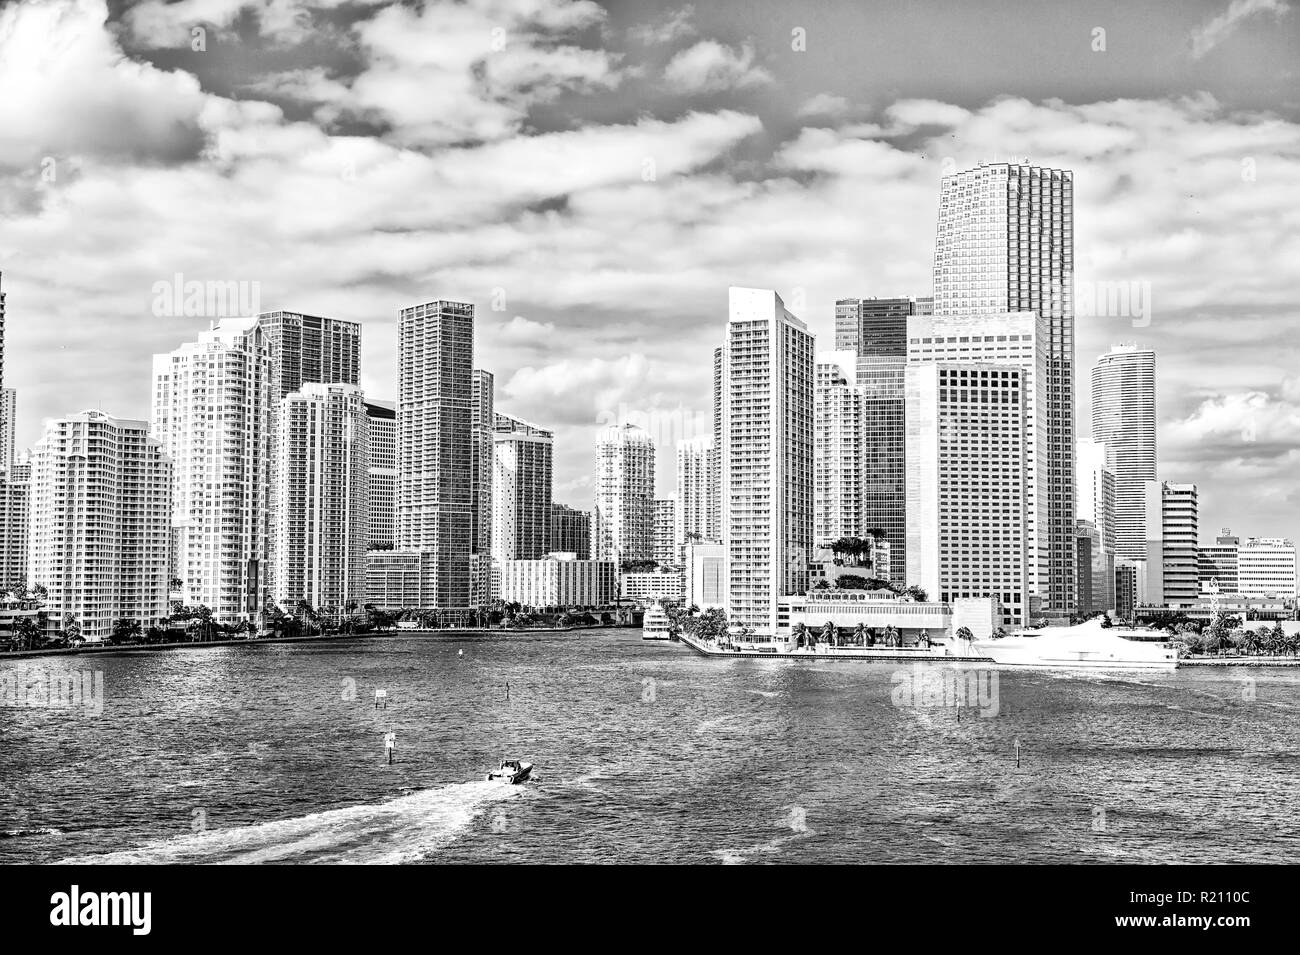 La ville de Miami. Yachts voile sur l'eau de mer de gratte-ciel sur ciel nuageux ciel bleu à Miami, États-Unis. Des vacances d'été, wanderlust, voyager, style de concept. Banque D'Images